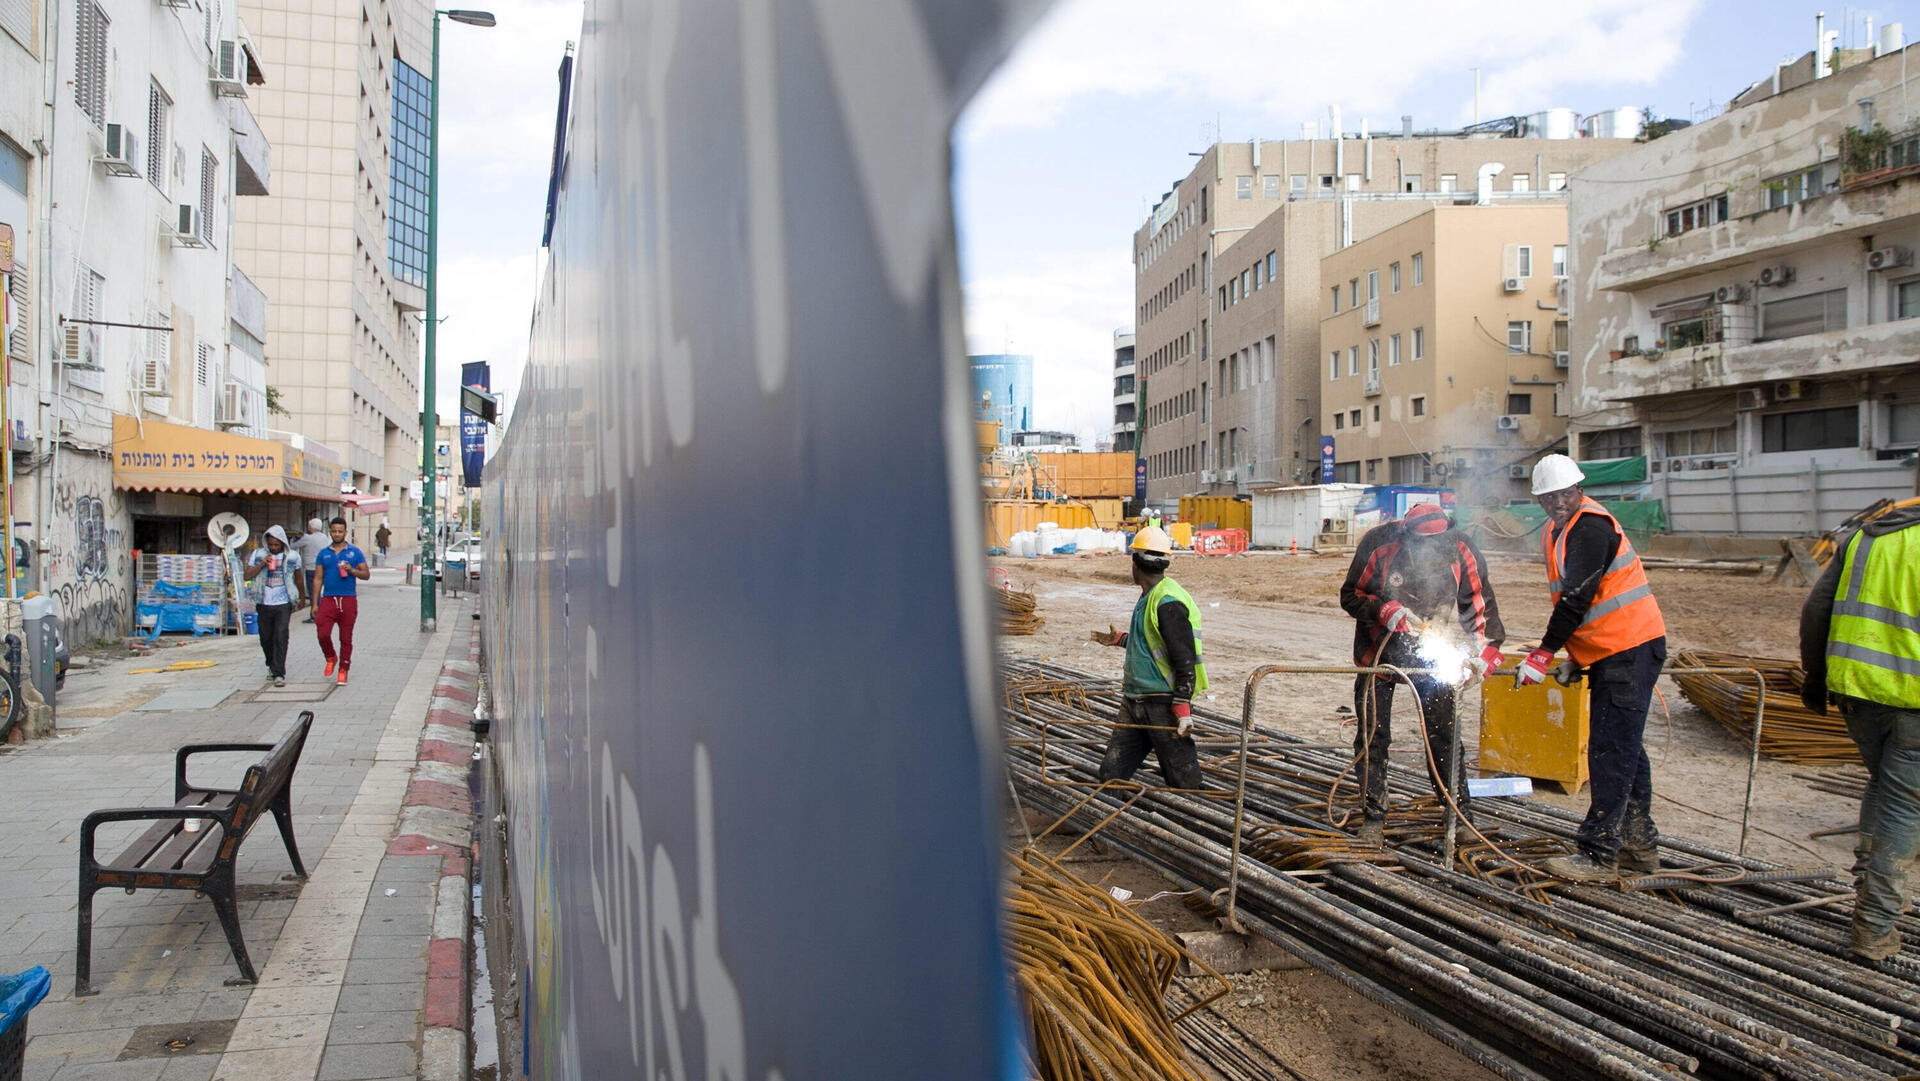  רכבת הקלה עבודות רכבת קלה תחנת אלנבי תל אביב